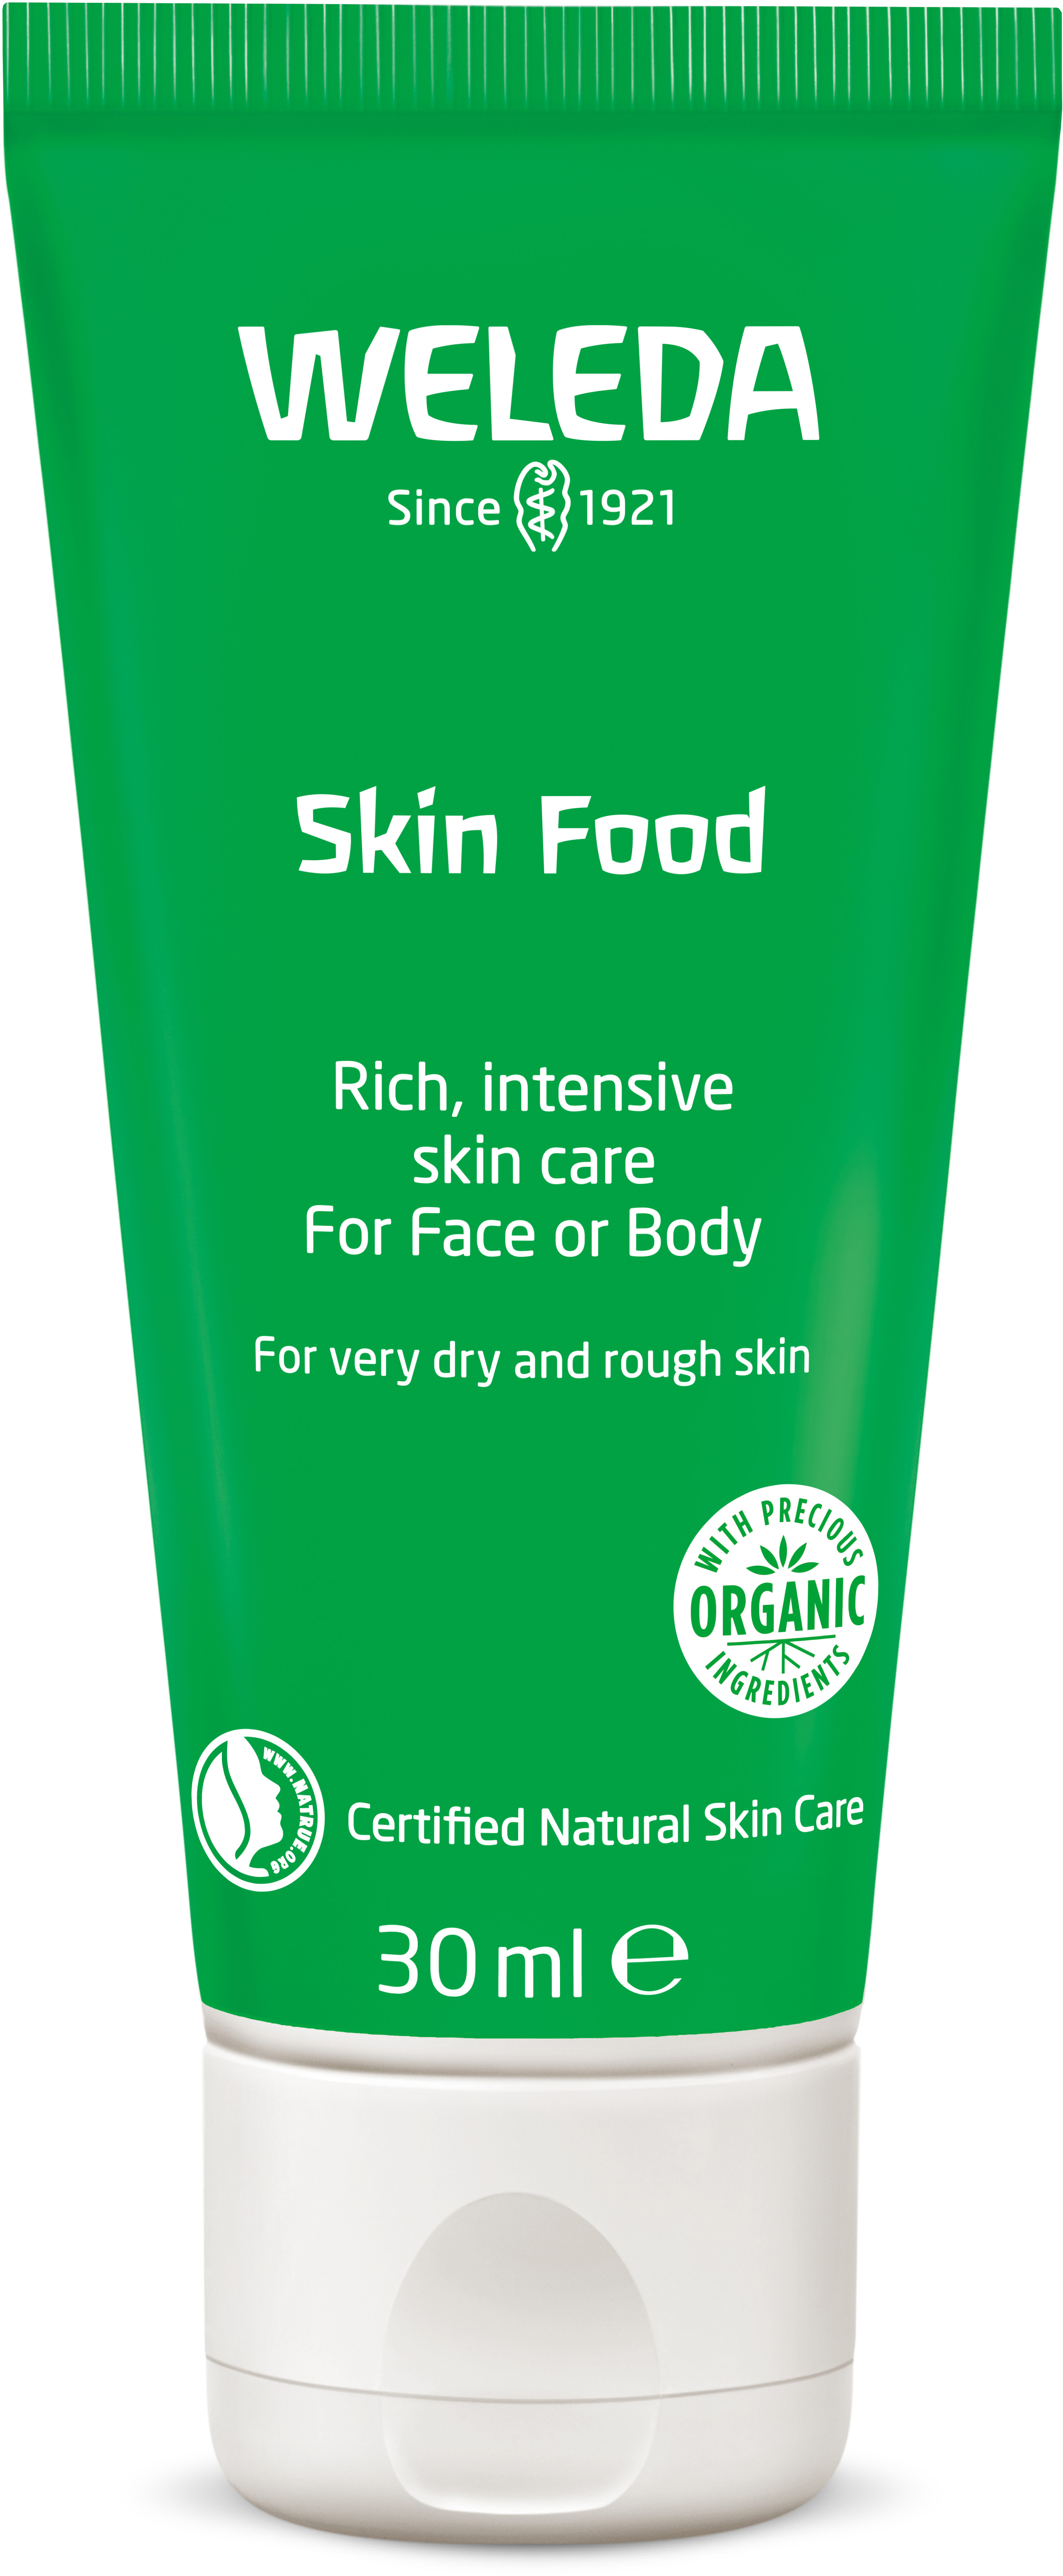 Weleda Skin Food Light - Clean, Natural Skin Moisturizer Lotion